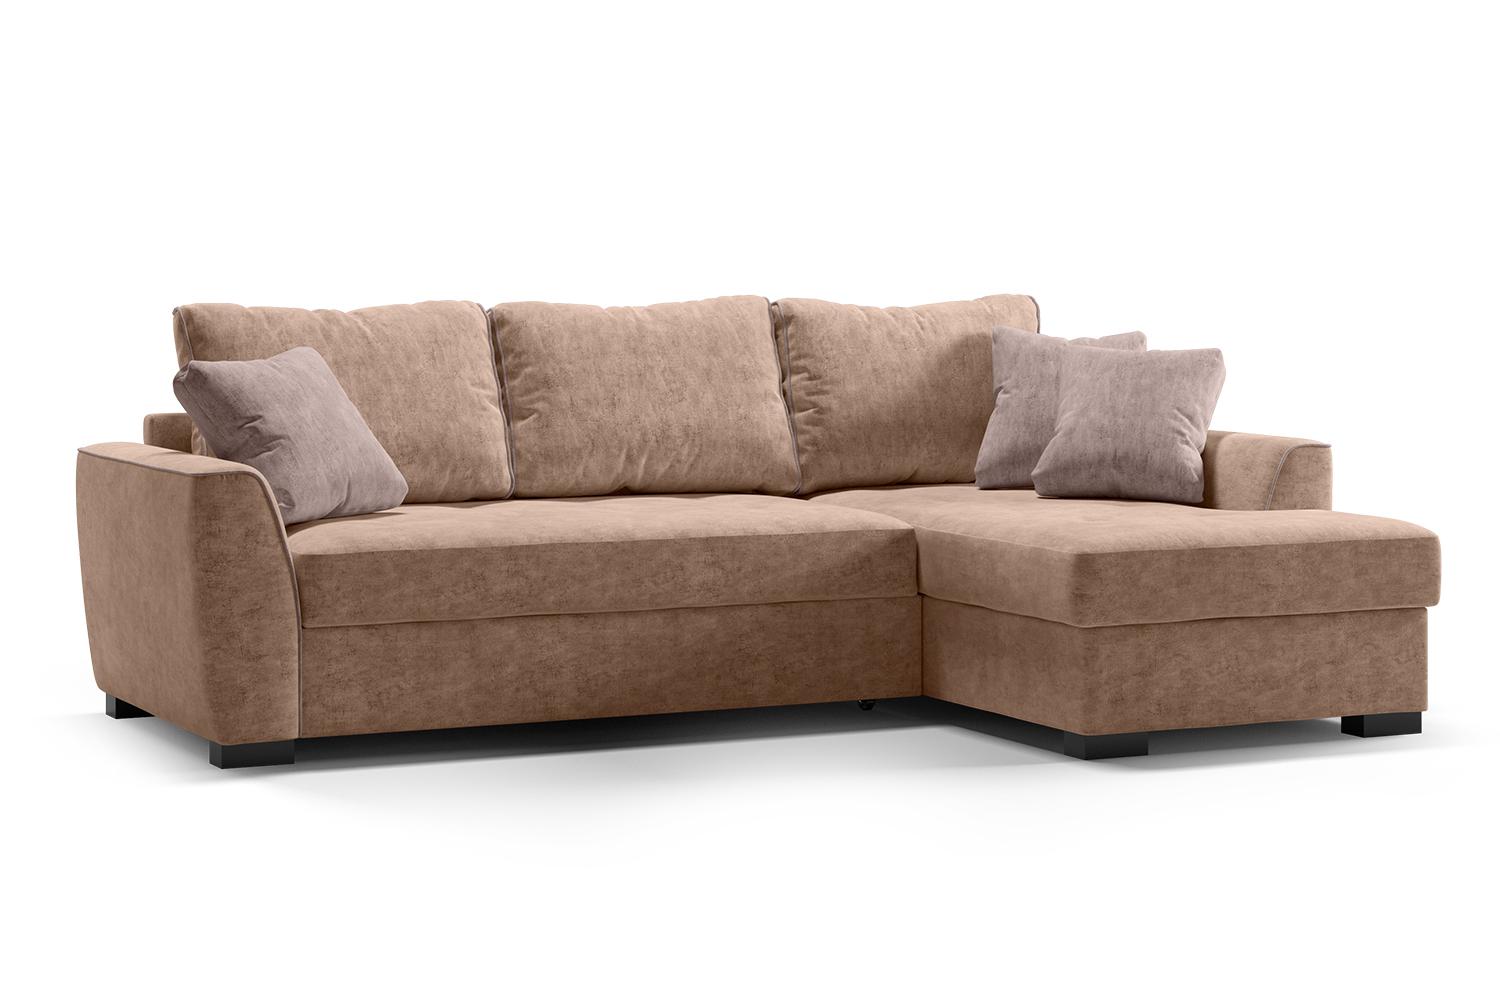 Угловой диван-кровать Като с правым углом